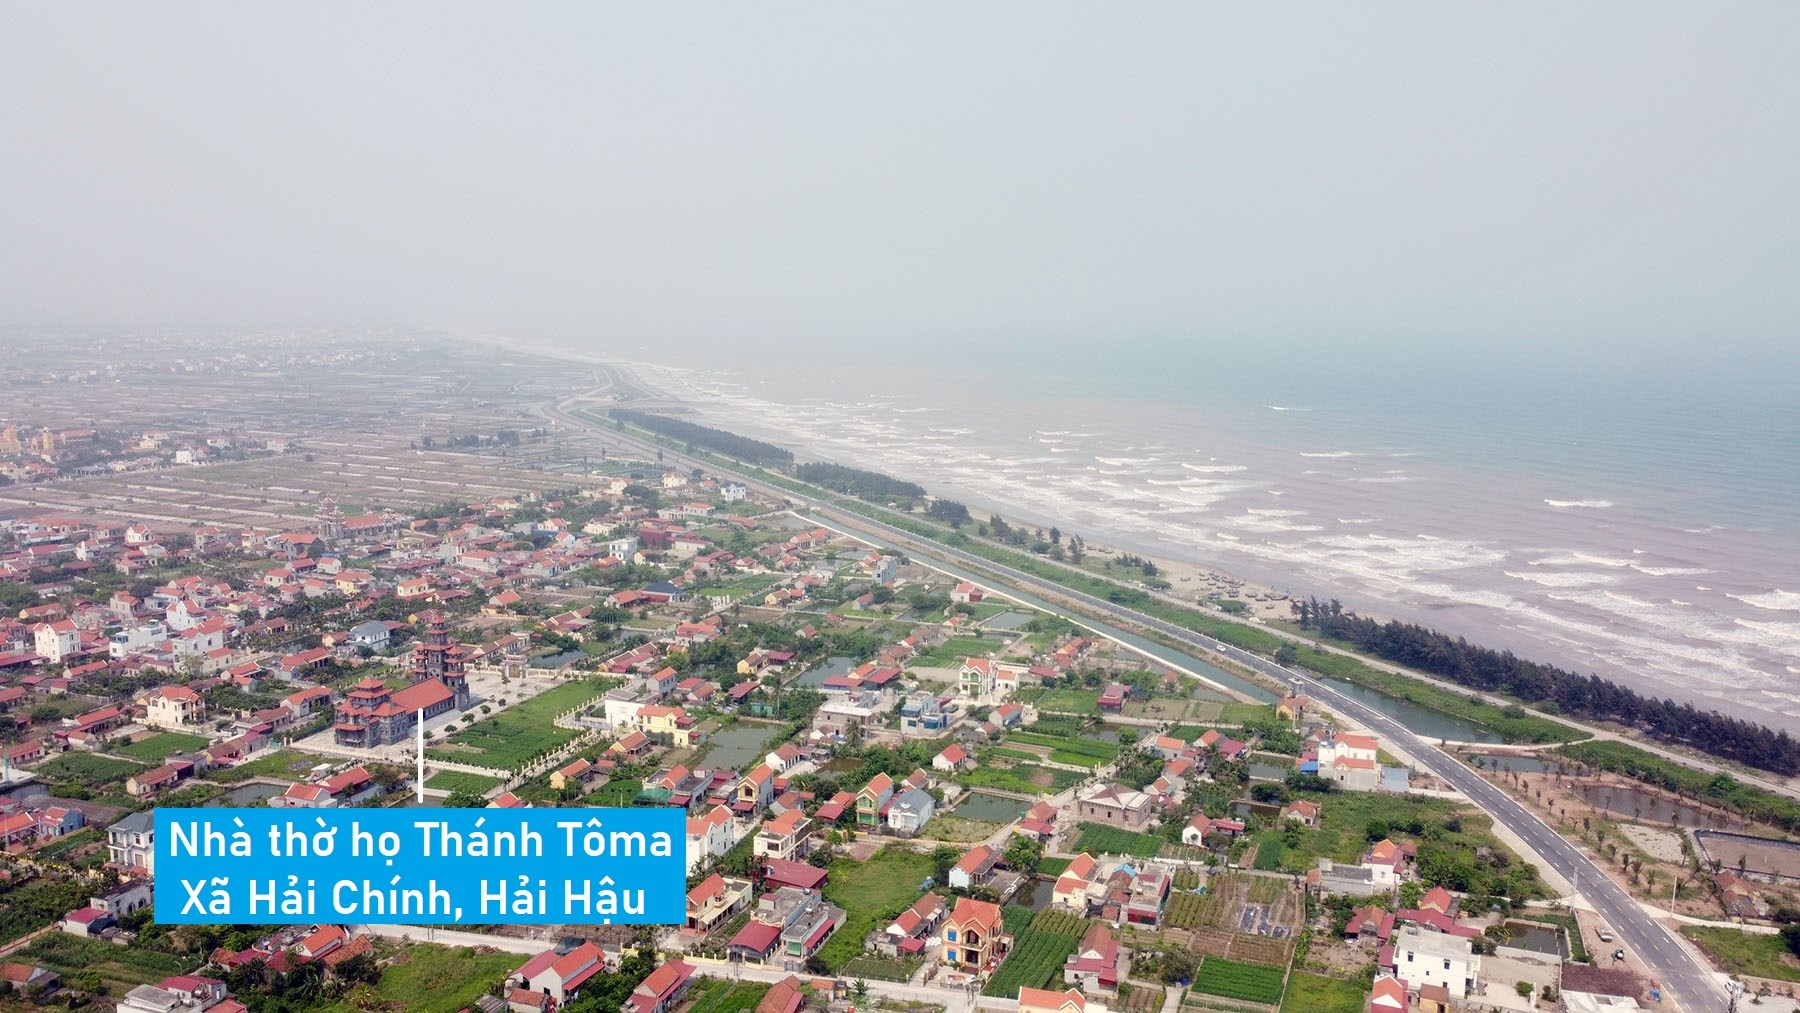 Hình ảnh đường bộ ven biển qua huyện Hải Hậu, Nam Định đã cơ bản hoàn thành